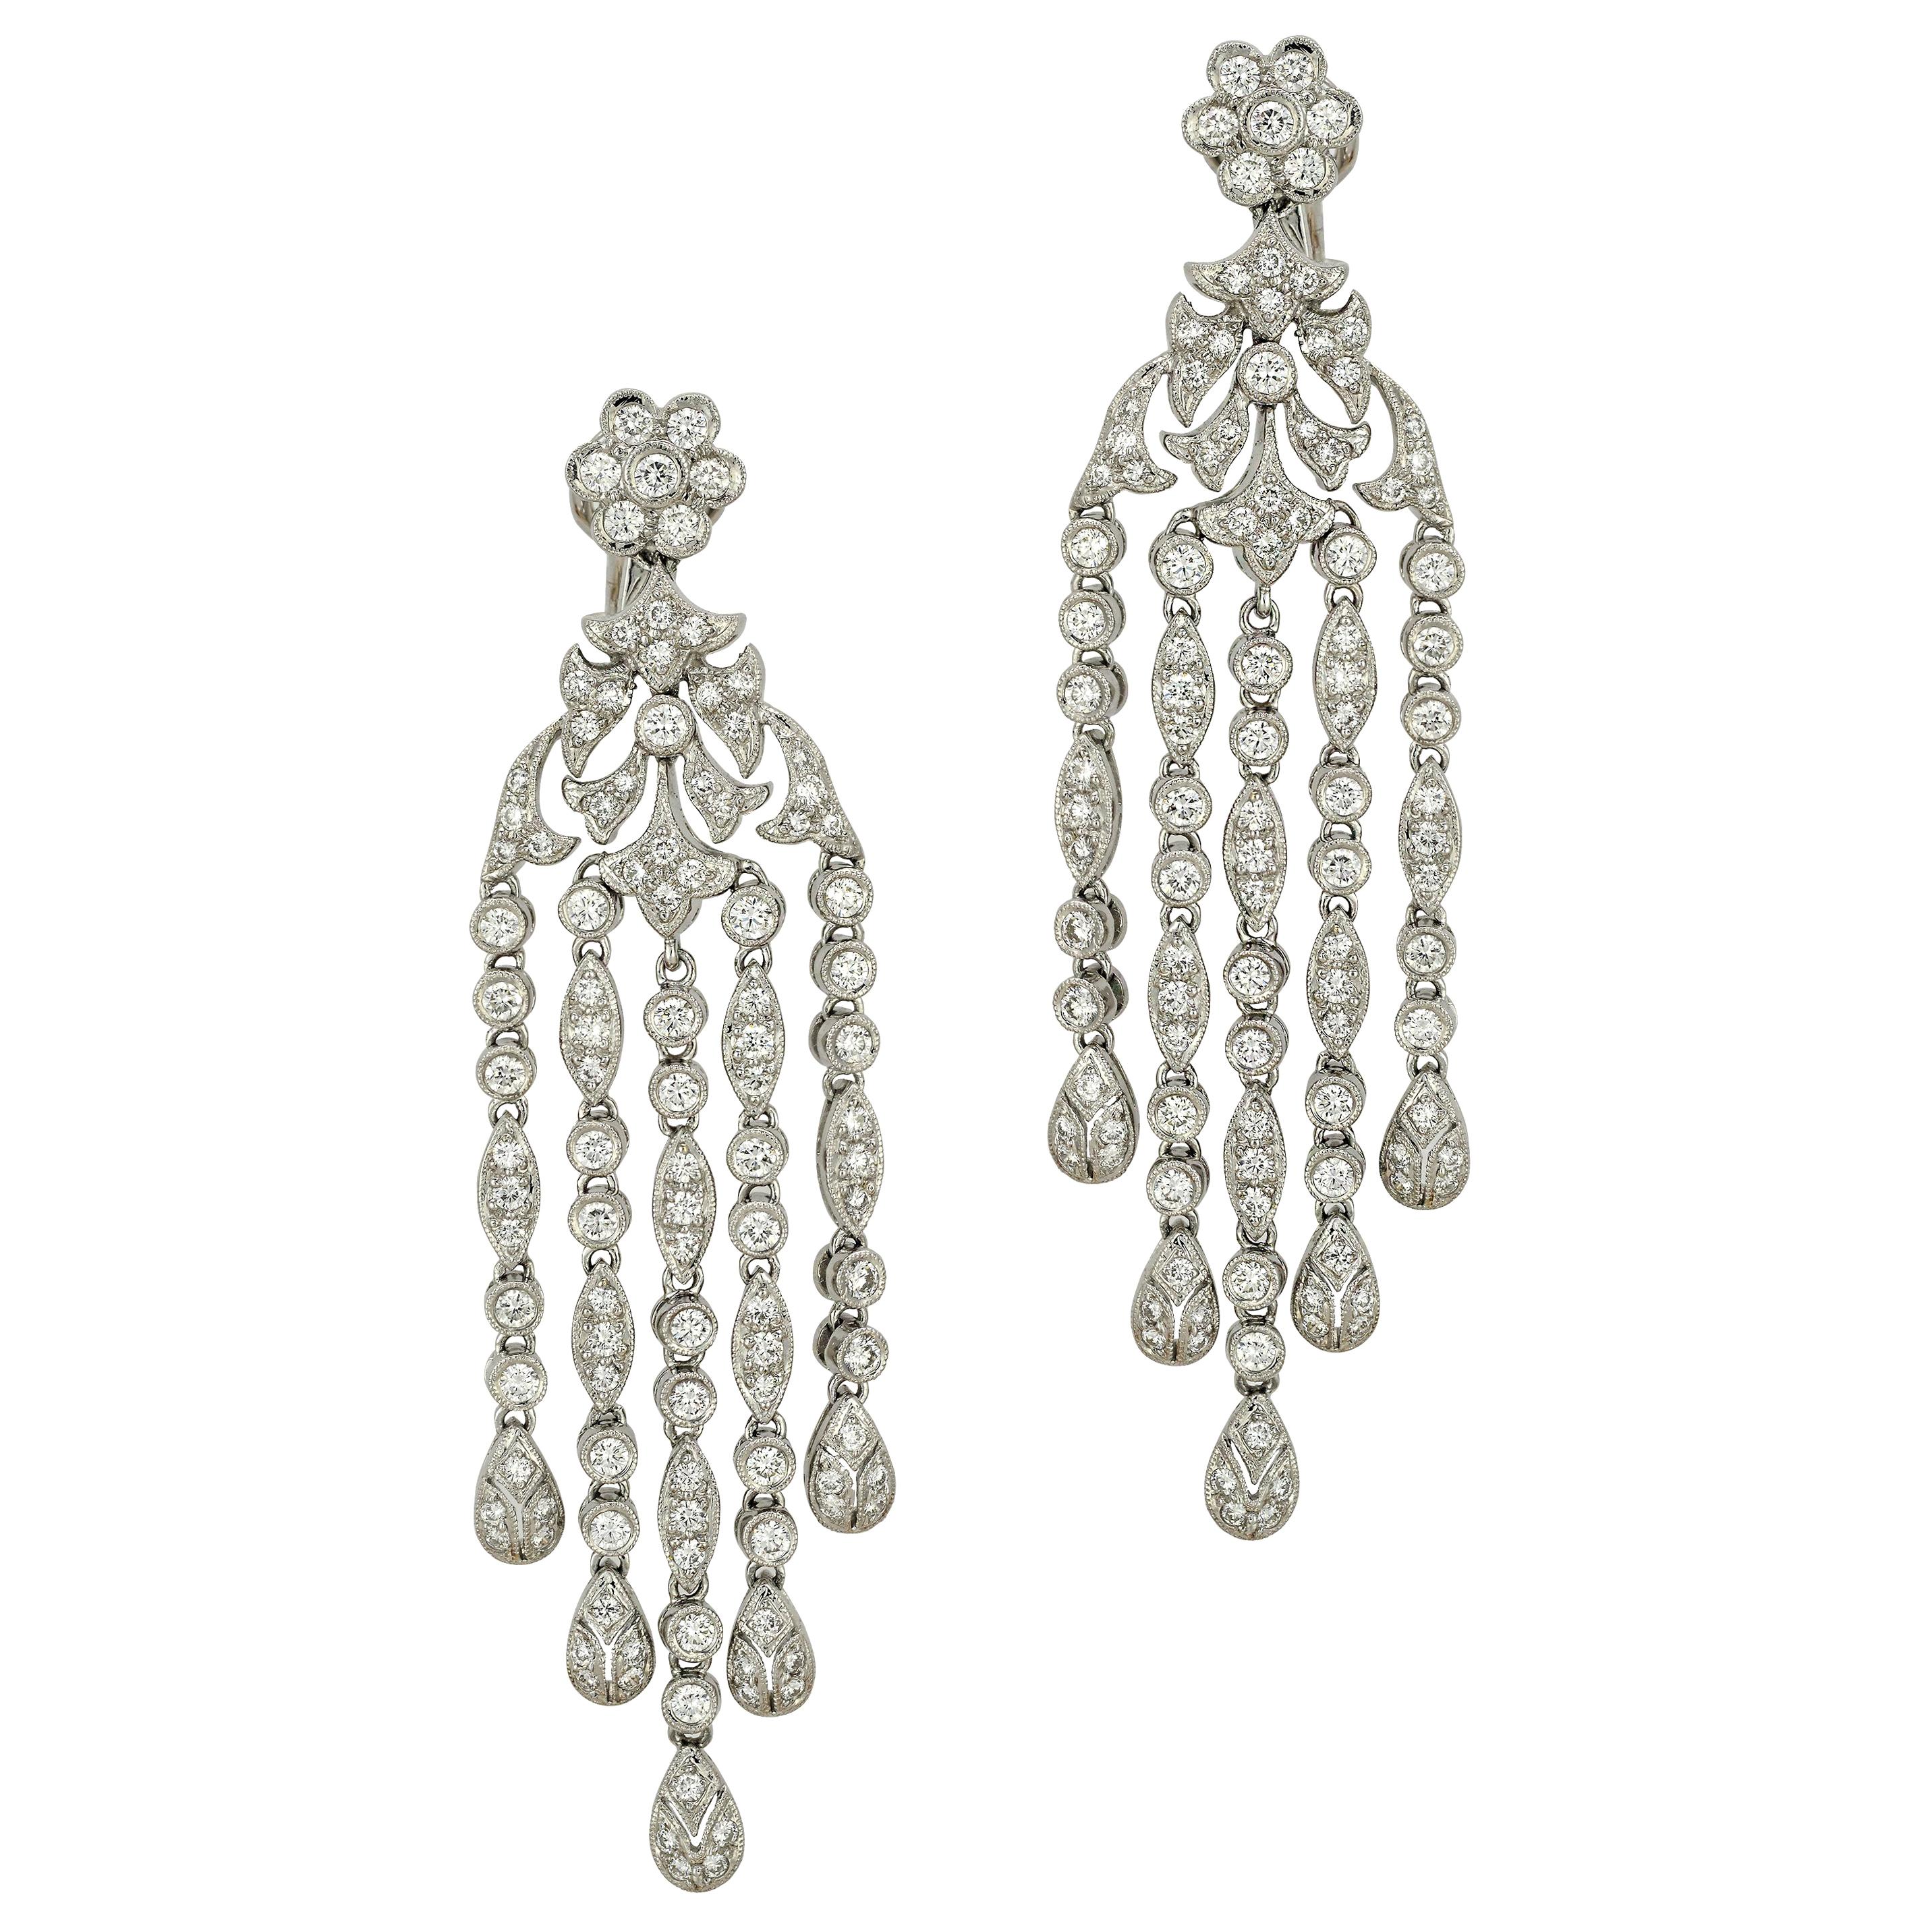 5 Carat Diamond Chandelier Earrings